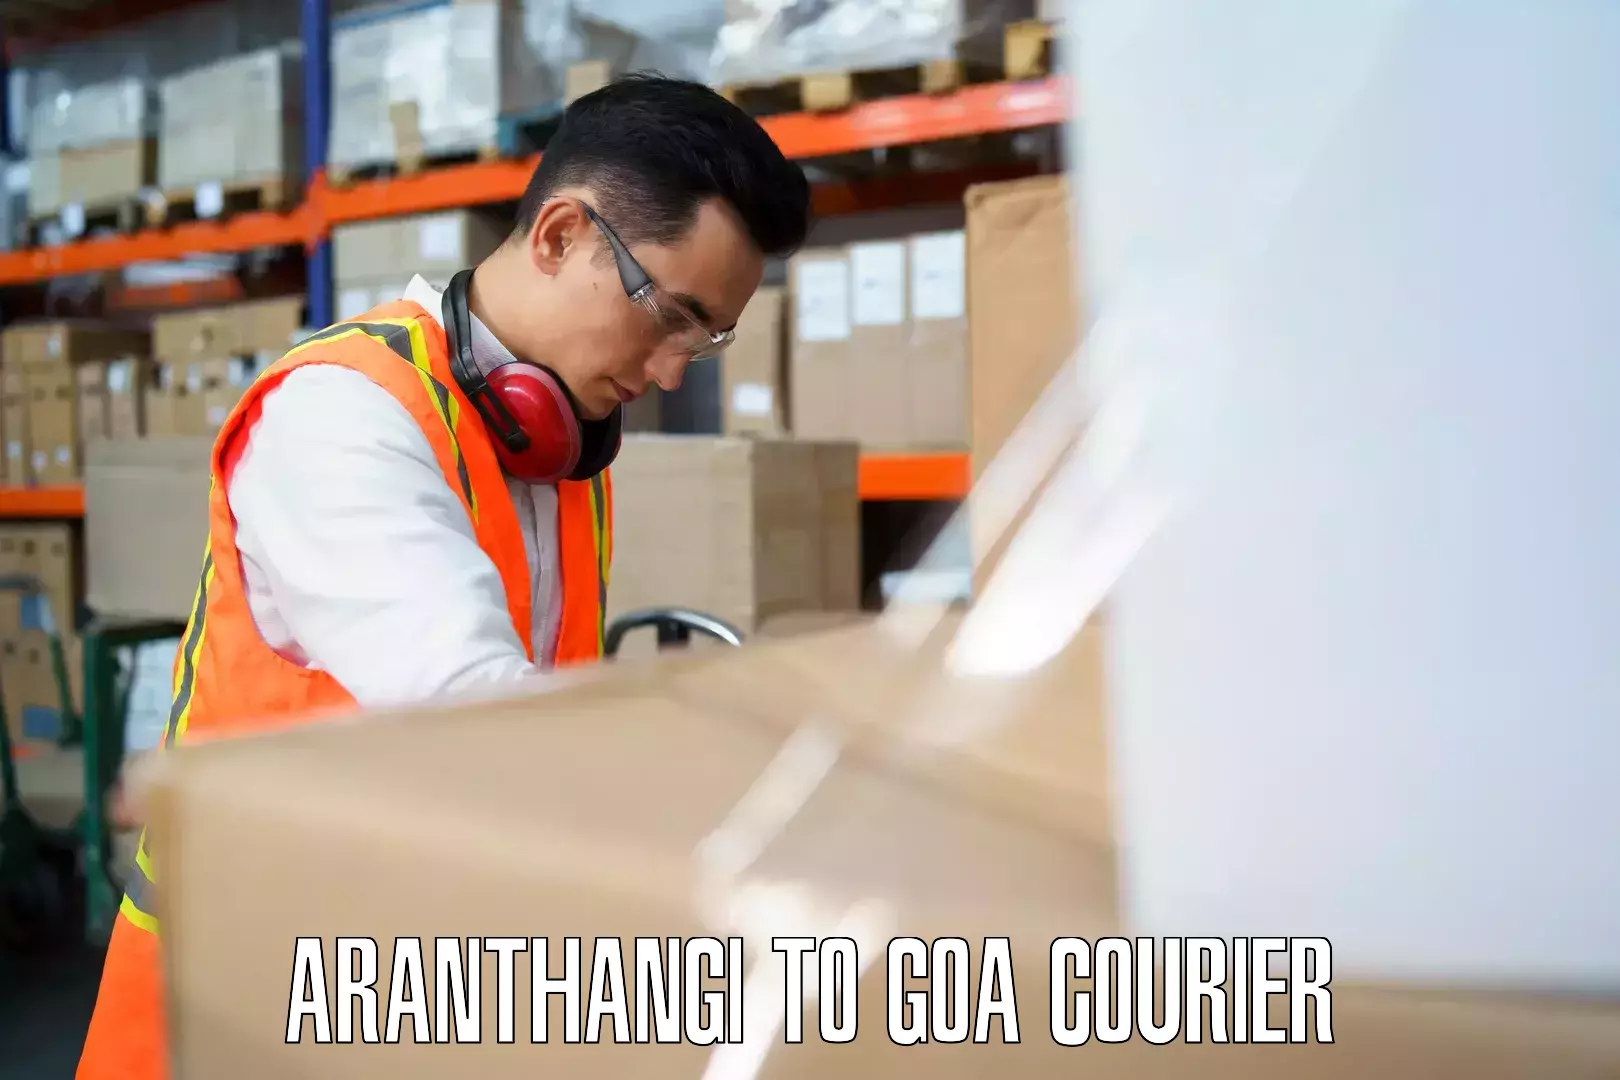 Baggage shipping service Aranthangi to Goa University